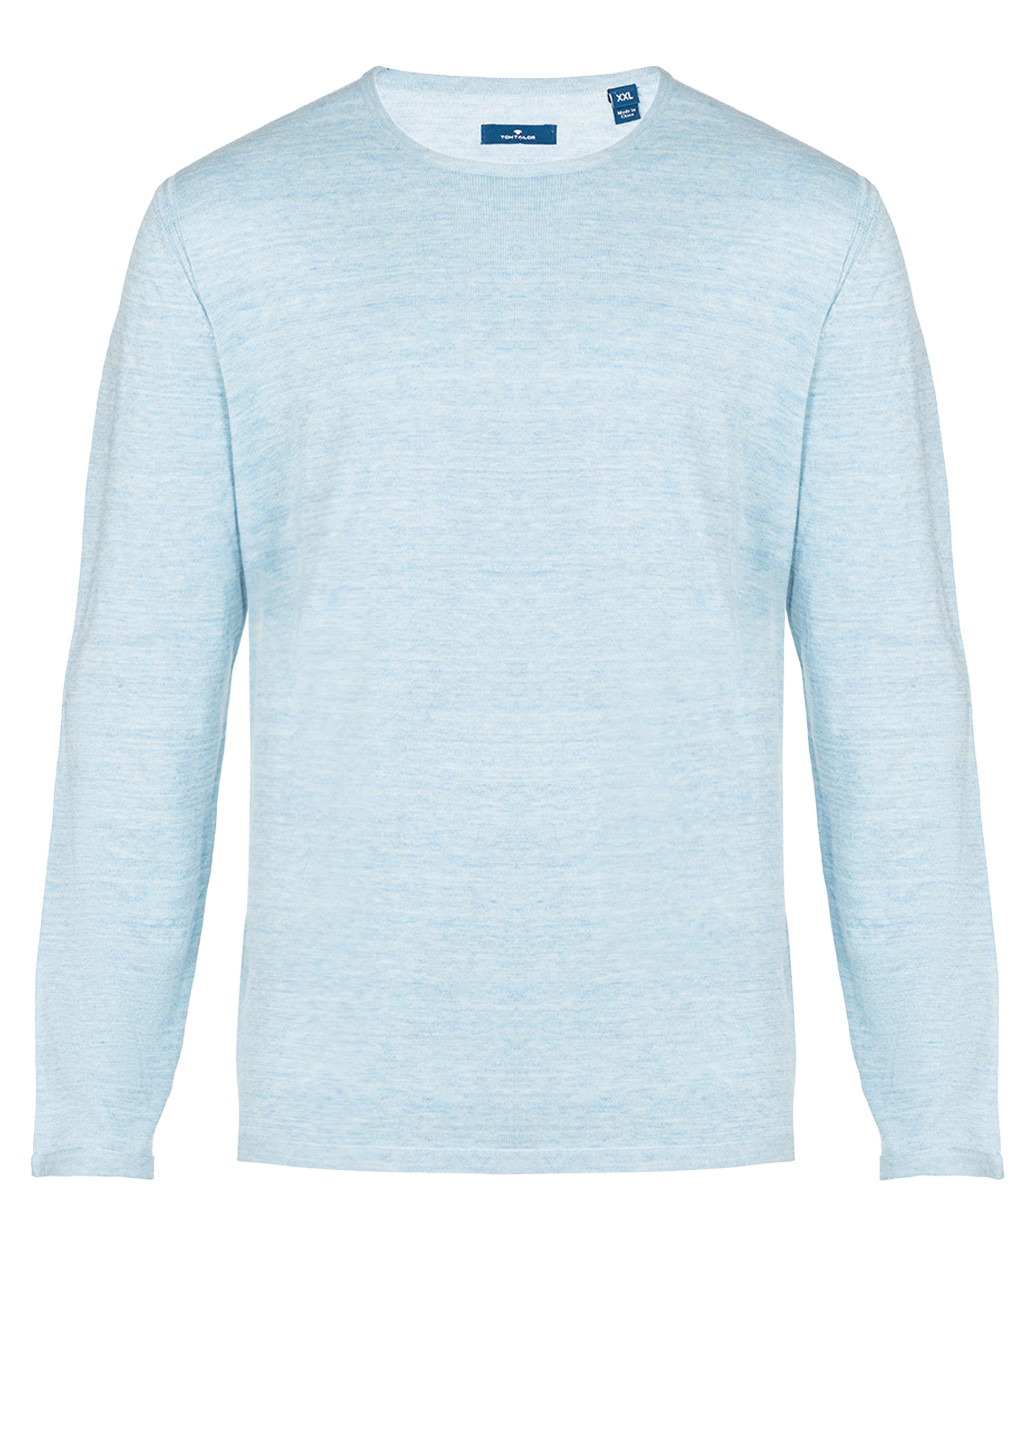 Голубой демисезонный мужской голубой свитер джемпер джемпер Tom Tailor